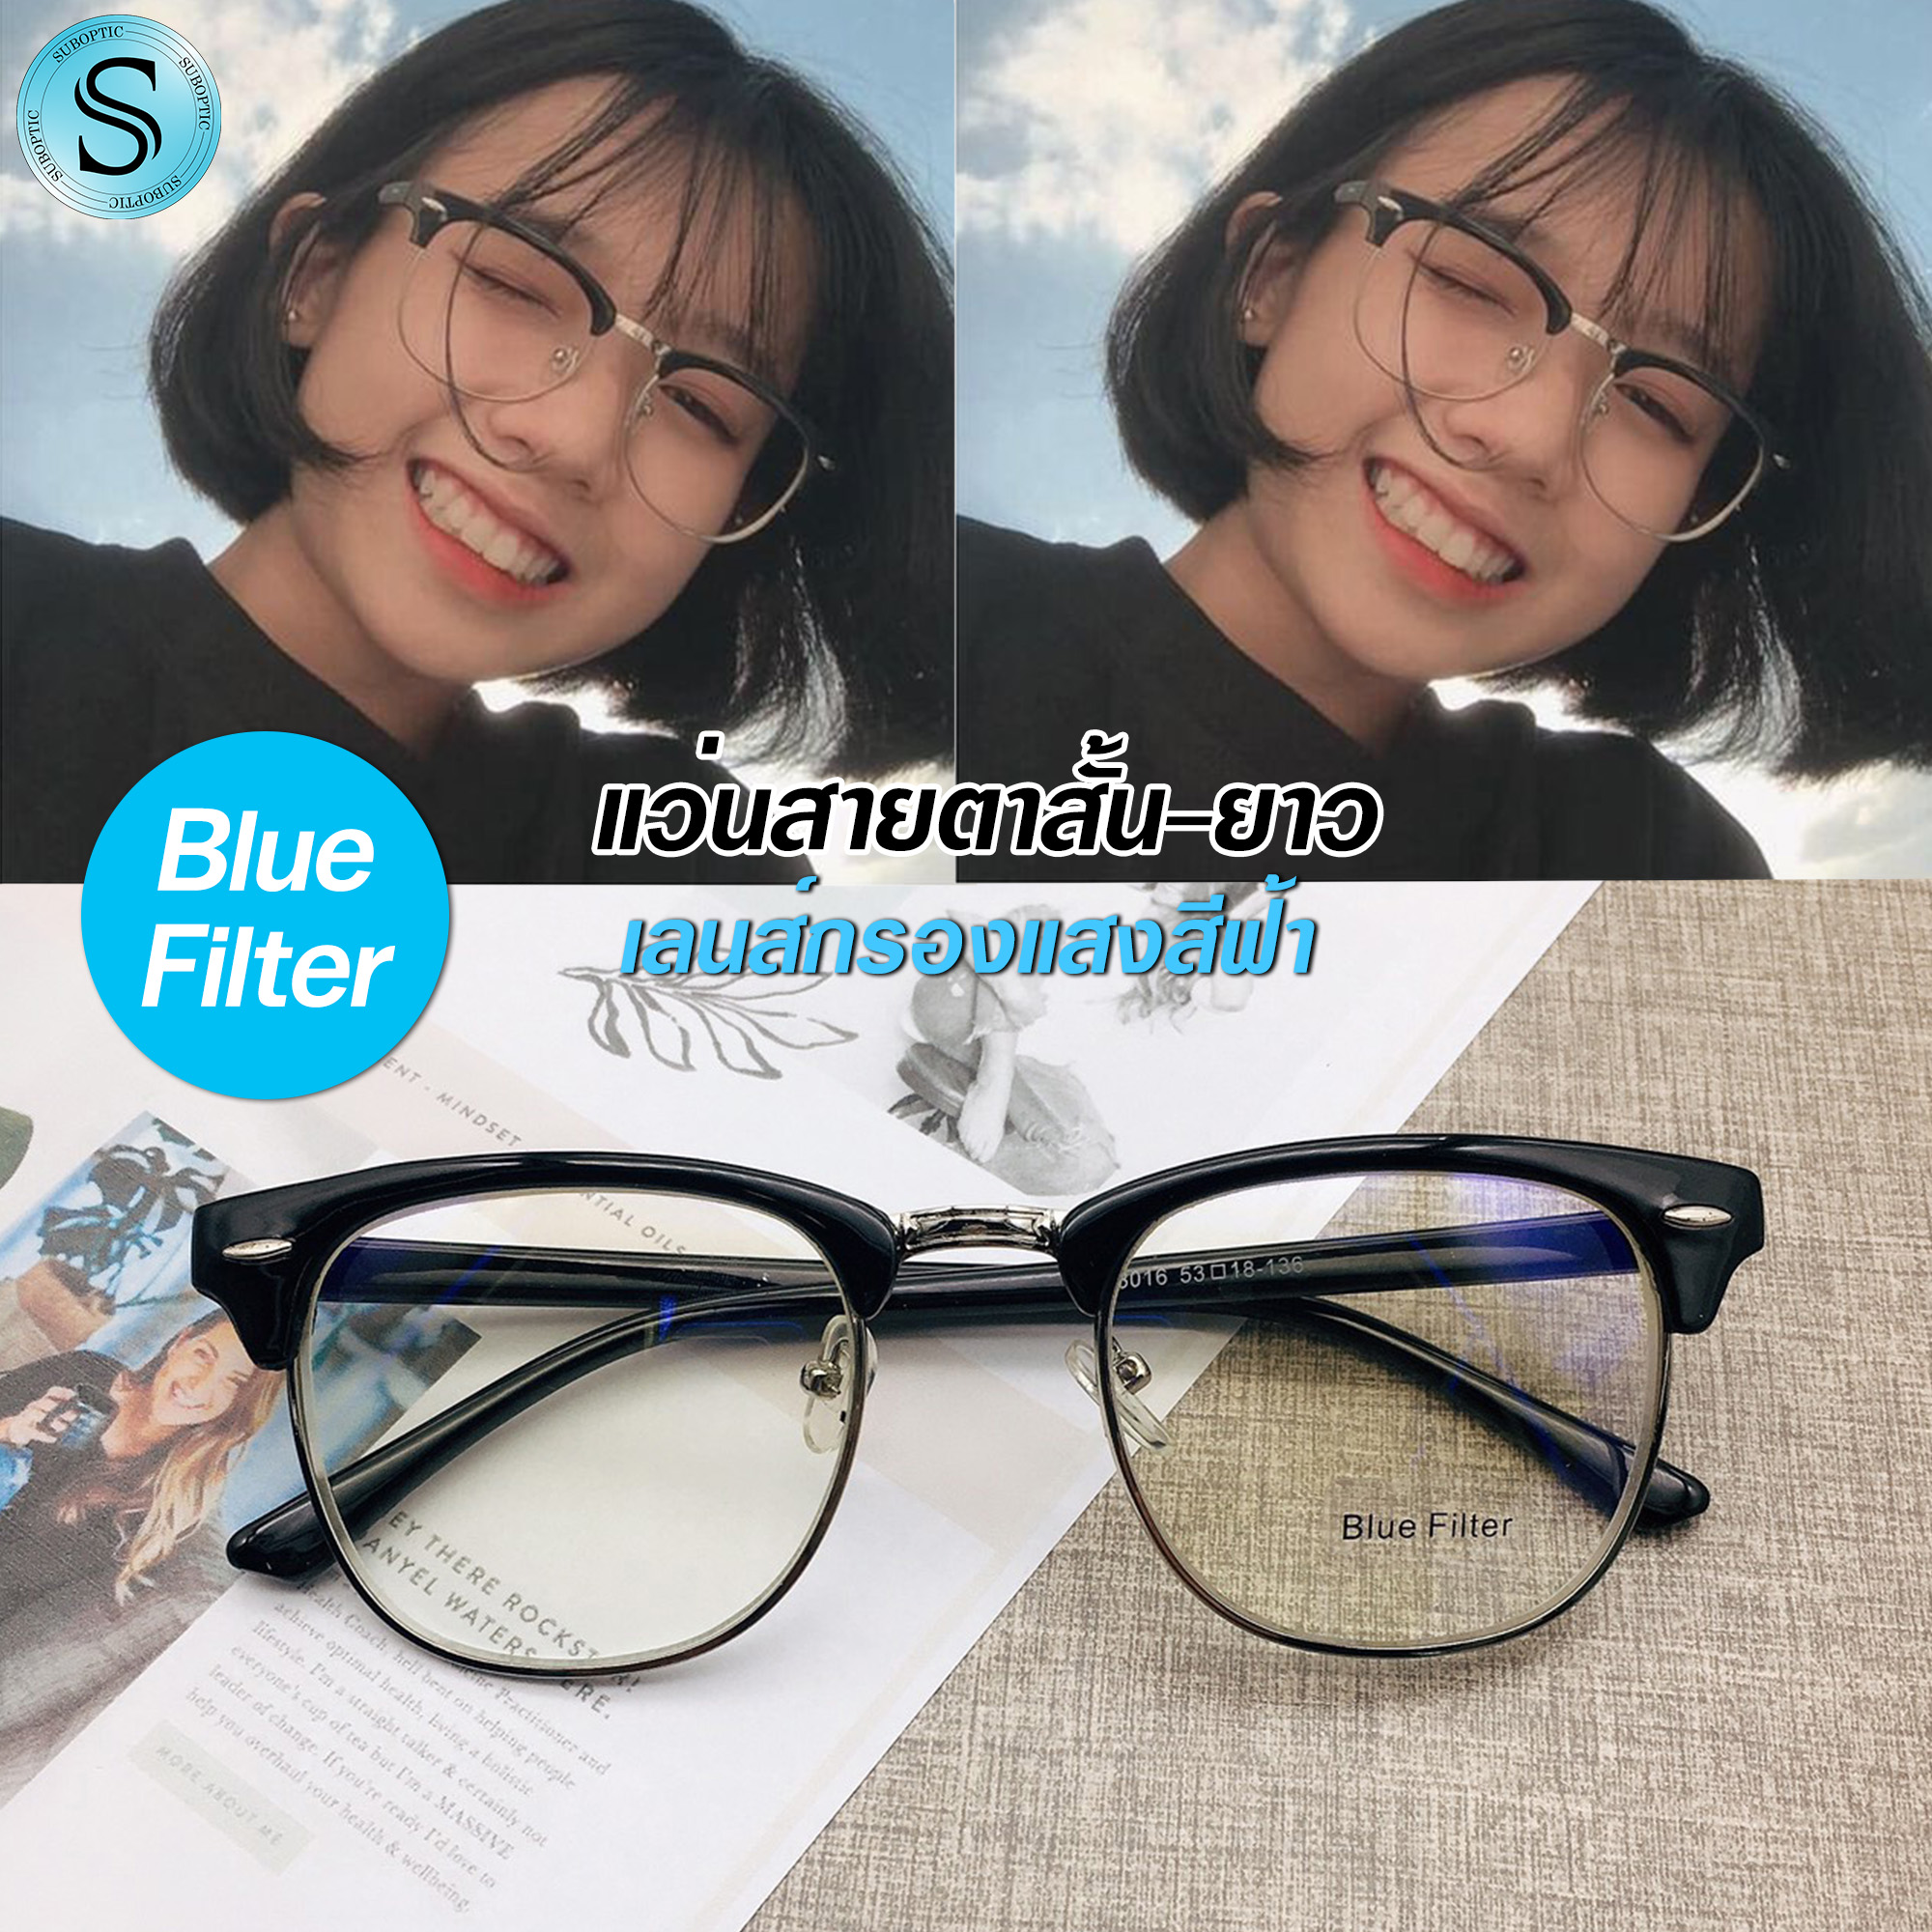 Suboptic แว่นสายตาสั้นและสายตายาว Blue Filter เลนส์กรองแสงสีฟ้า คุณภาพอย่างดี พร้อมผ้าเช็ดแว่นและถุงผ้าใส่แว่น